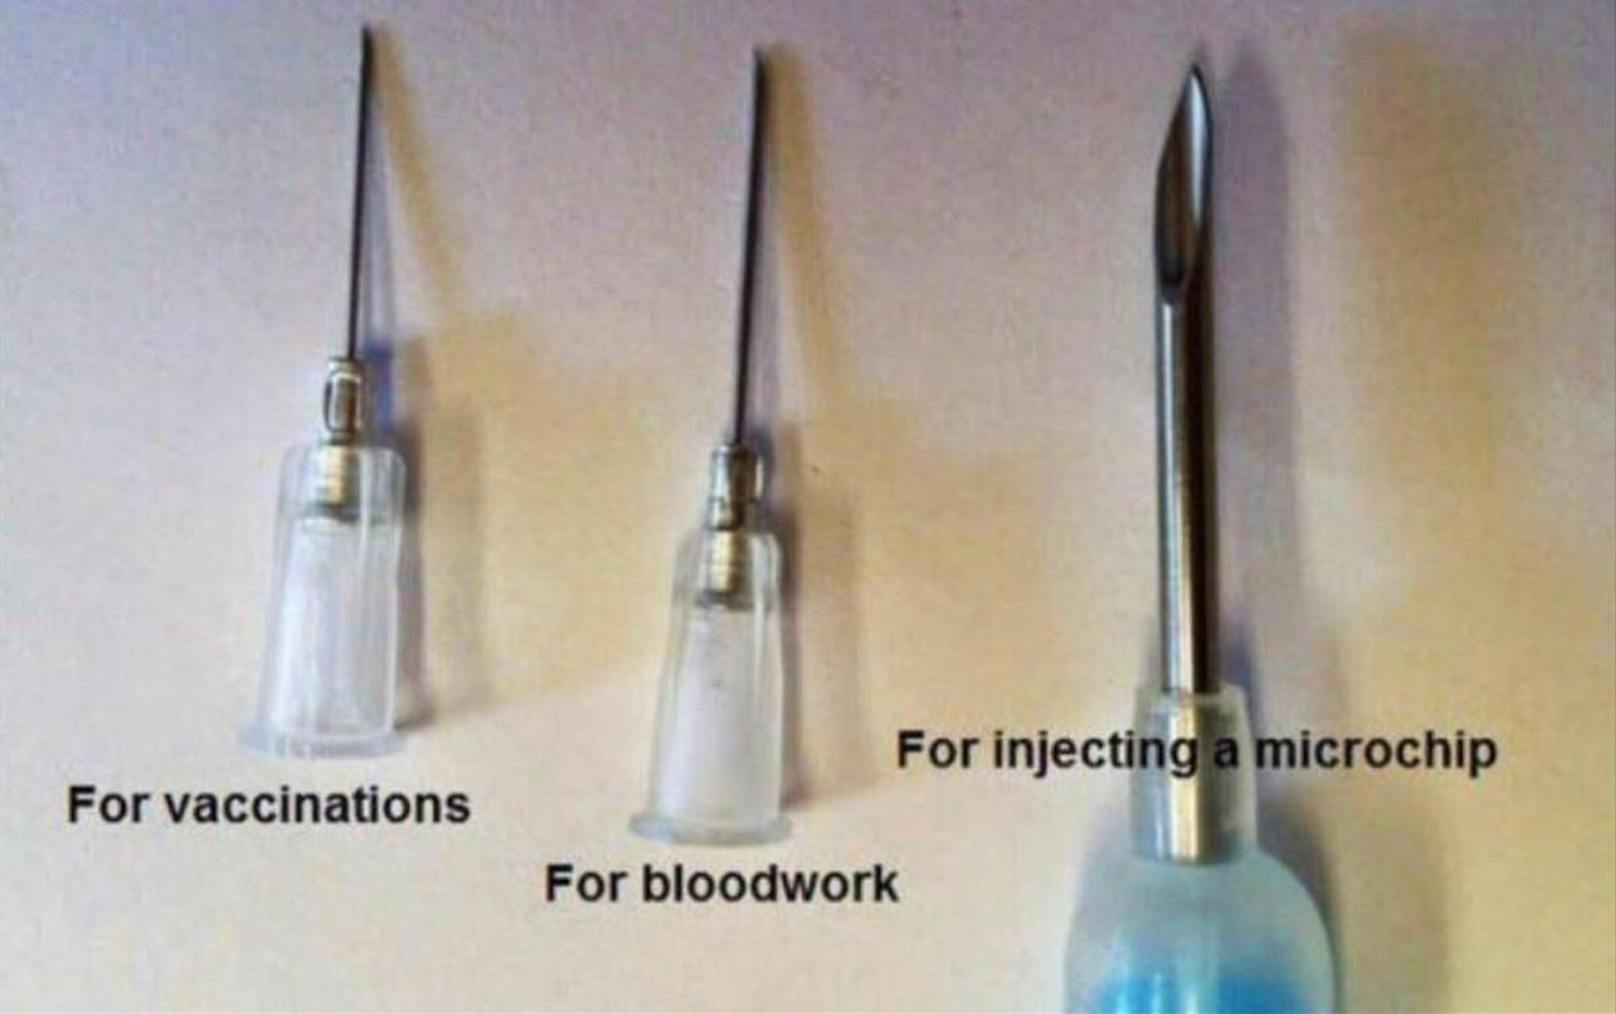 Dazu schreibt Twitter-Nutzer Russel England: "Nur zum Vergleich: Das links ist die Nadel für Impfungen, das rechts diejenige, um Mikrochips zu injizieren."